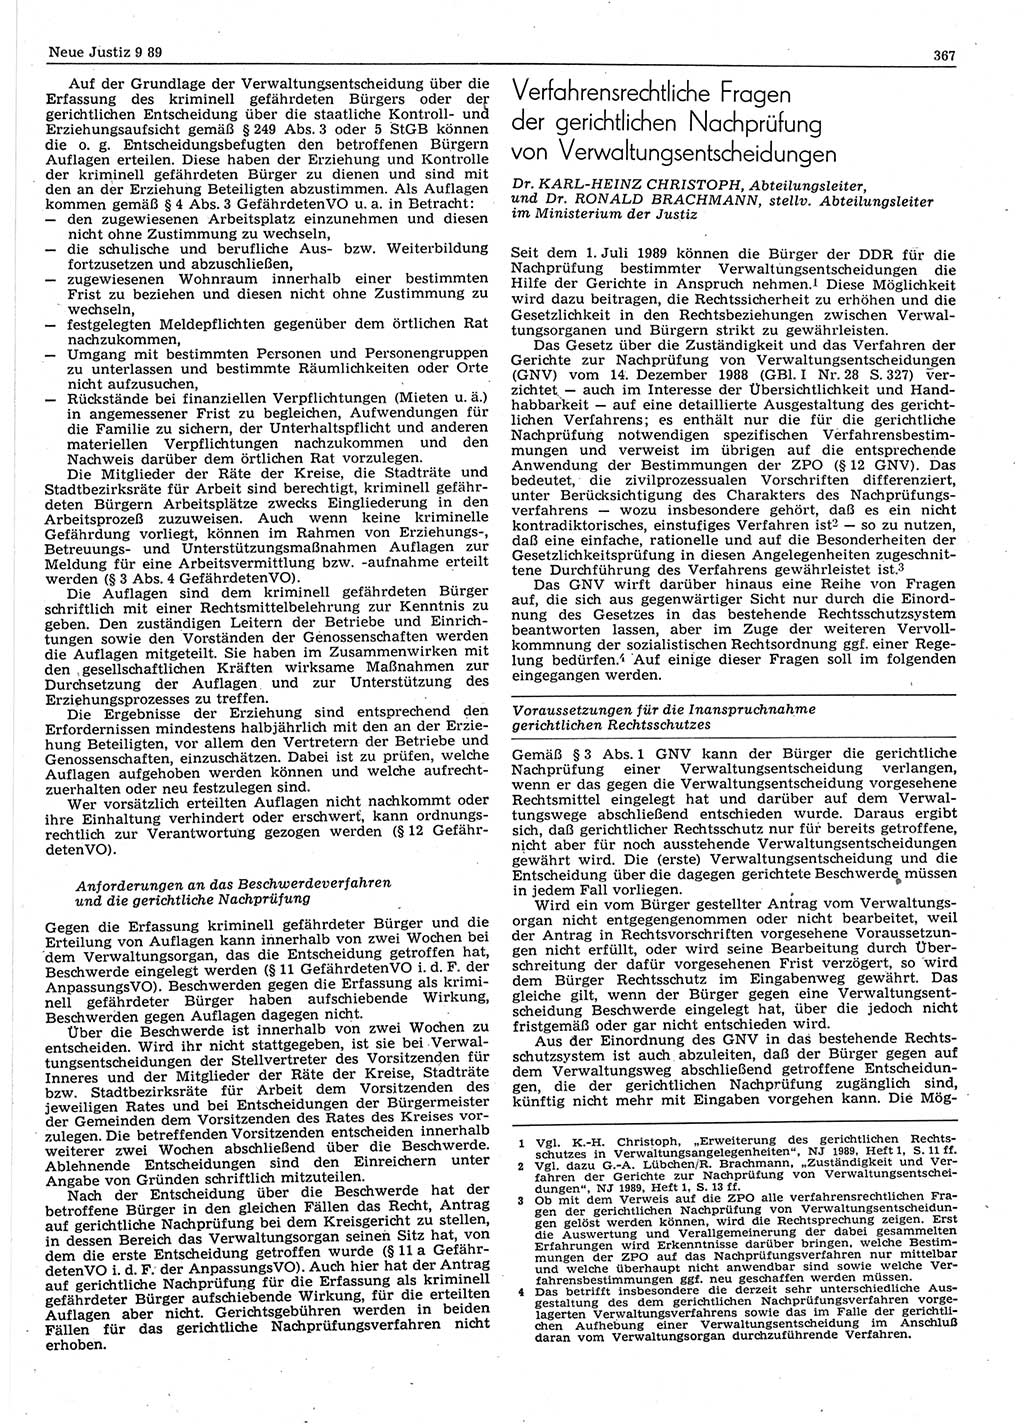 Neue Justiz (NJ), Zeitschrift für sozialistisches Recht und Gesetzlichkeit [Deutsche Demokratische Republik (DDR)], 43. Jahrgang 1989, Seite 367 (NJ DDR 1989, S. 367)